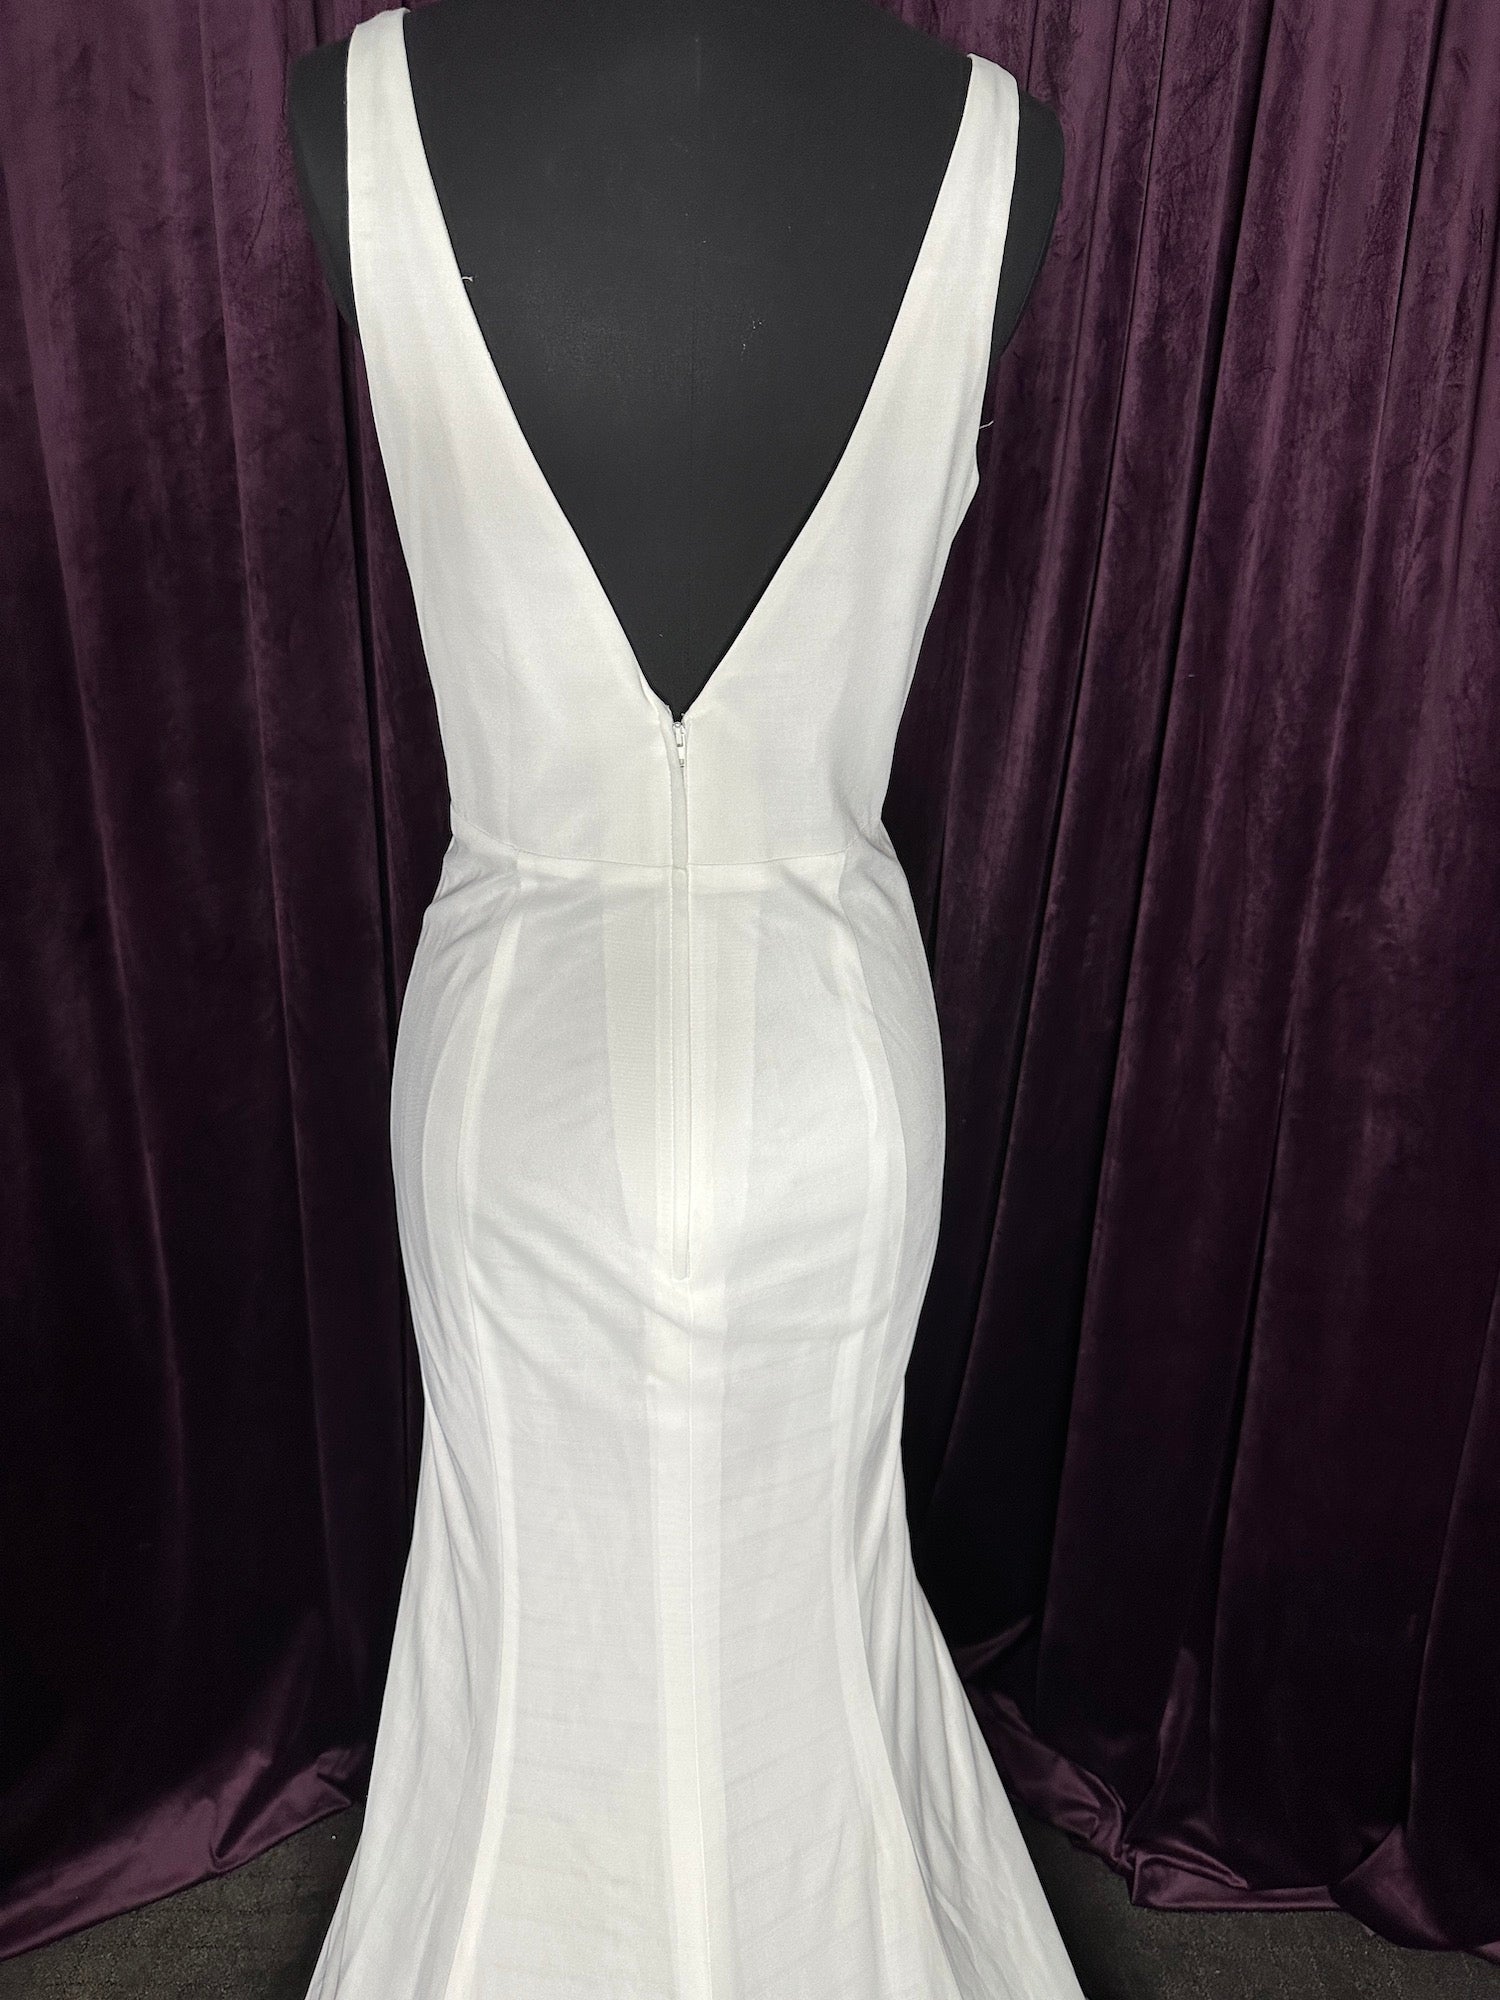 V Neckline, Low Back Mermaid Wedding Dresses Online #1215 Sizing Sample